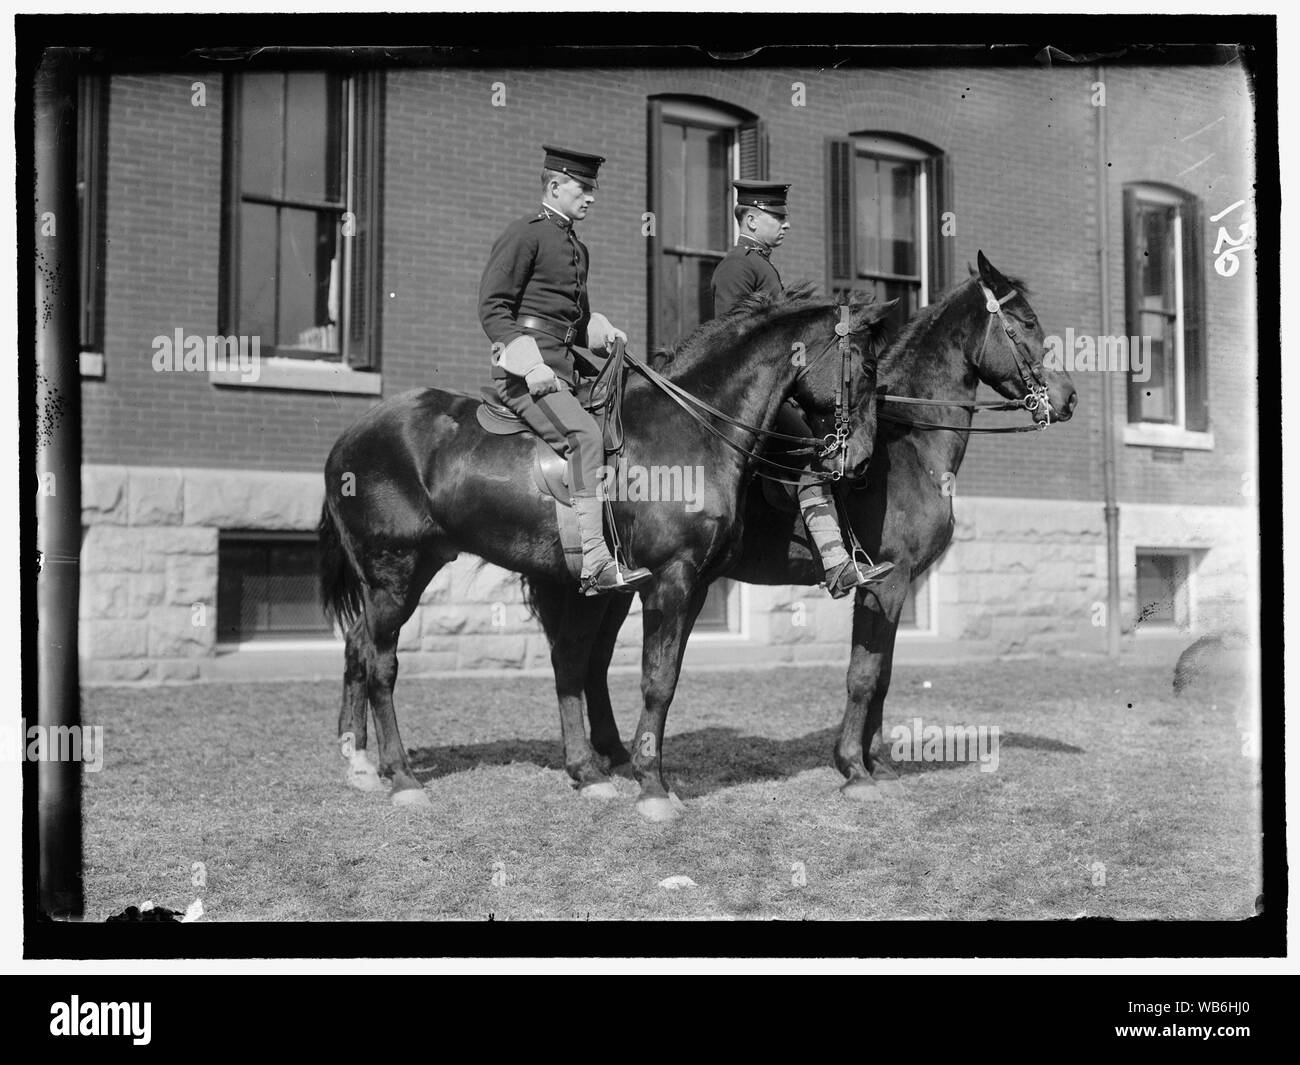 FORT MYER. Gruppo non identificato di ufficiali a cavallo Abstract/medio: Harris & Ewing collezione fotografica Foto Stock